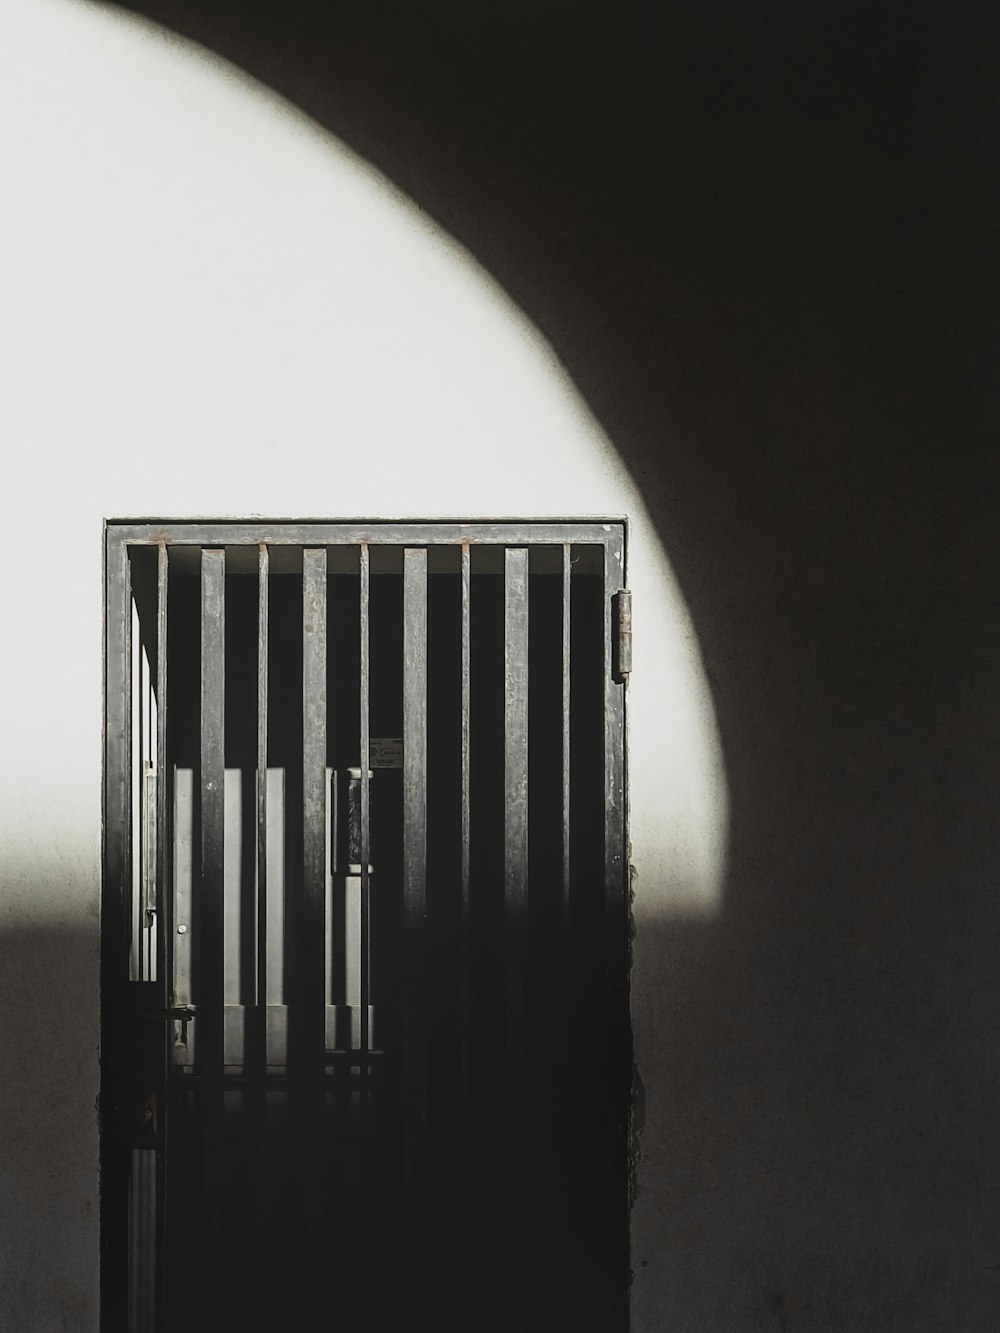 감옥의 흑백 사진